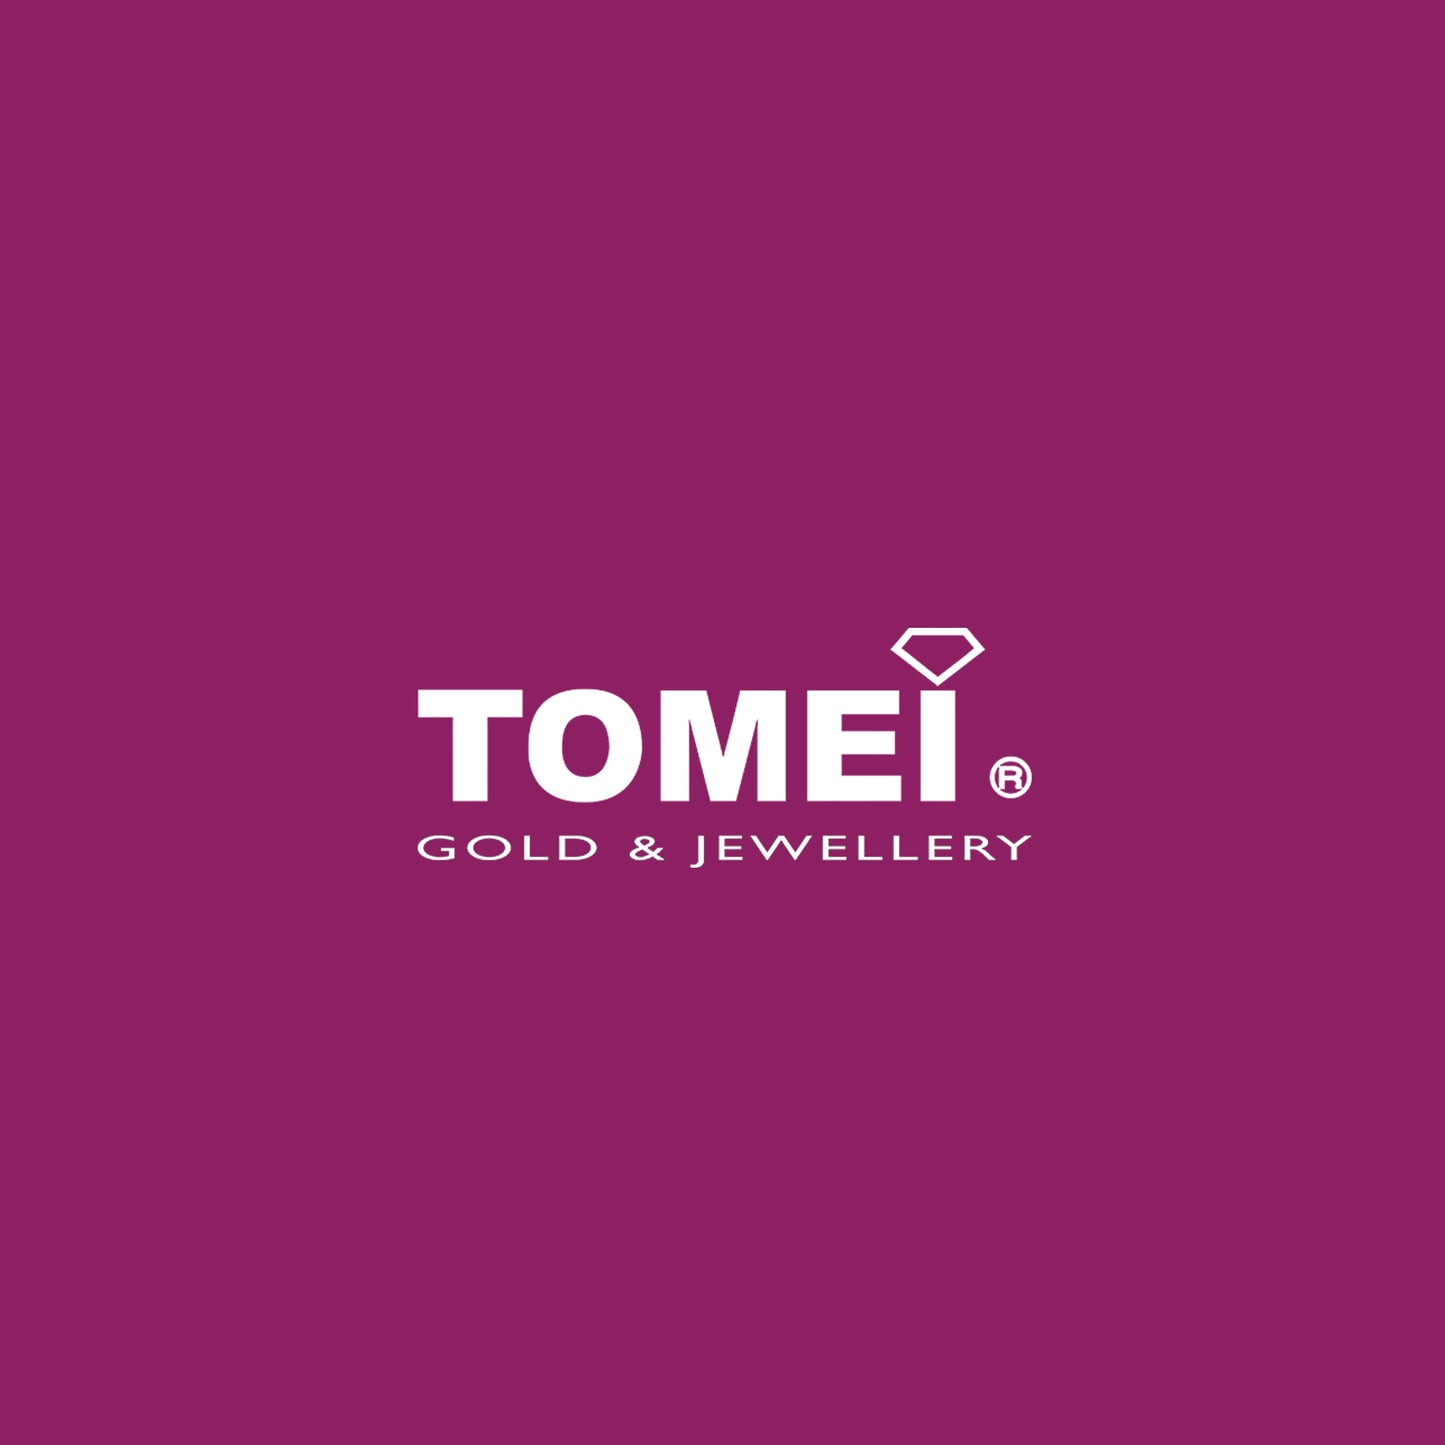 TOMEI Ring, Diamond White Gold 750 (DO0145673)